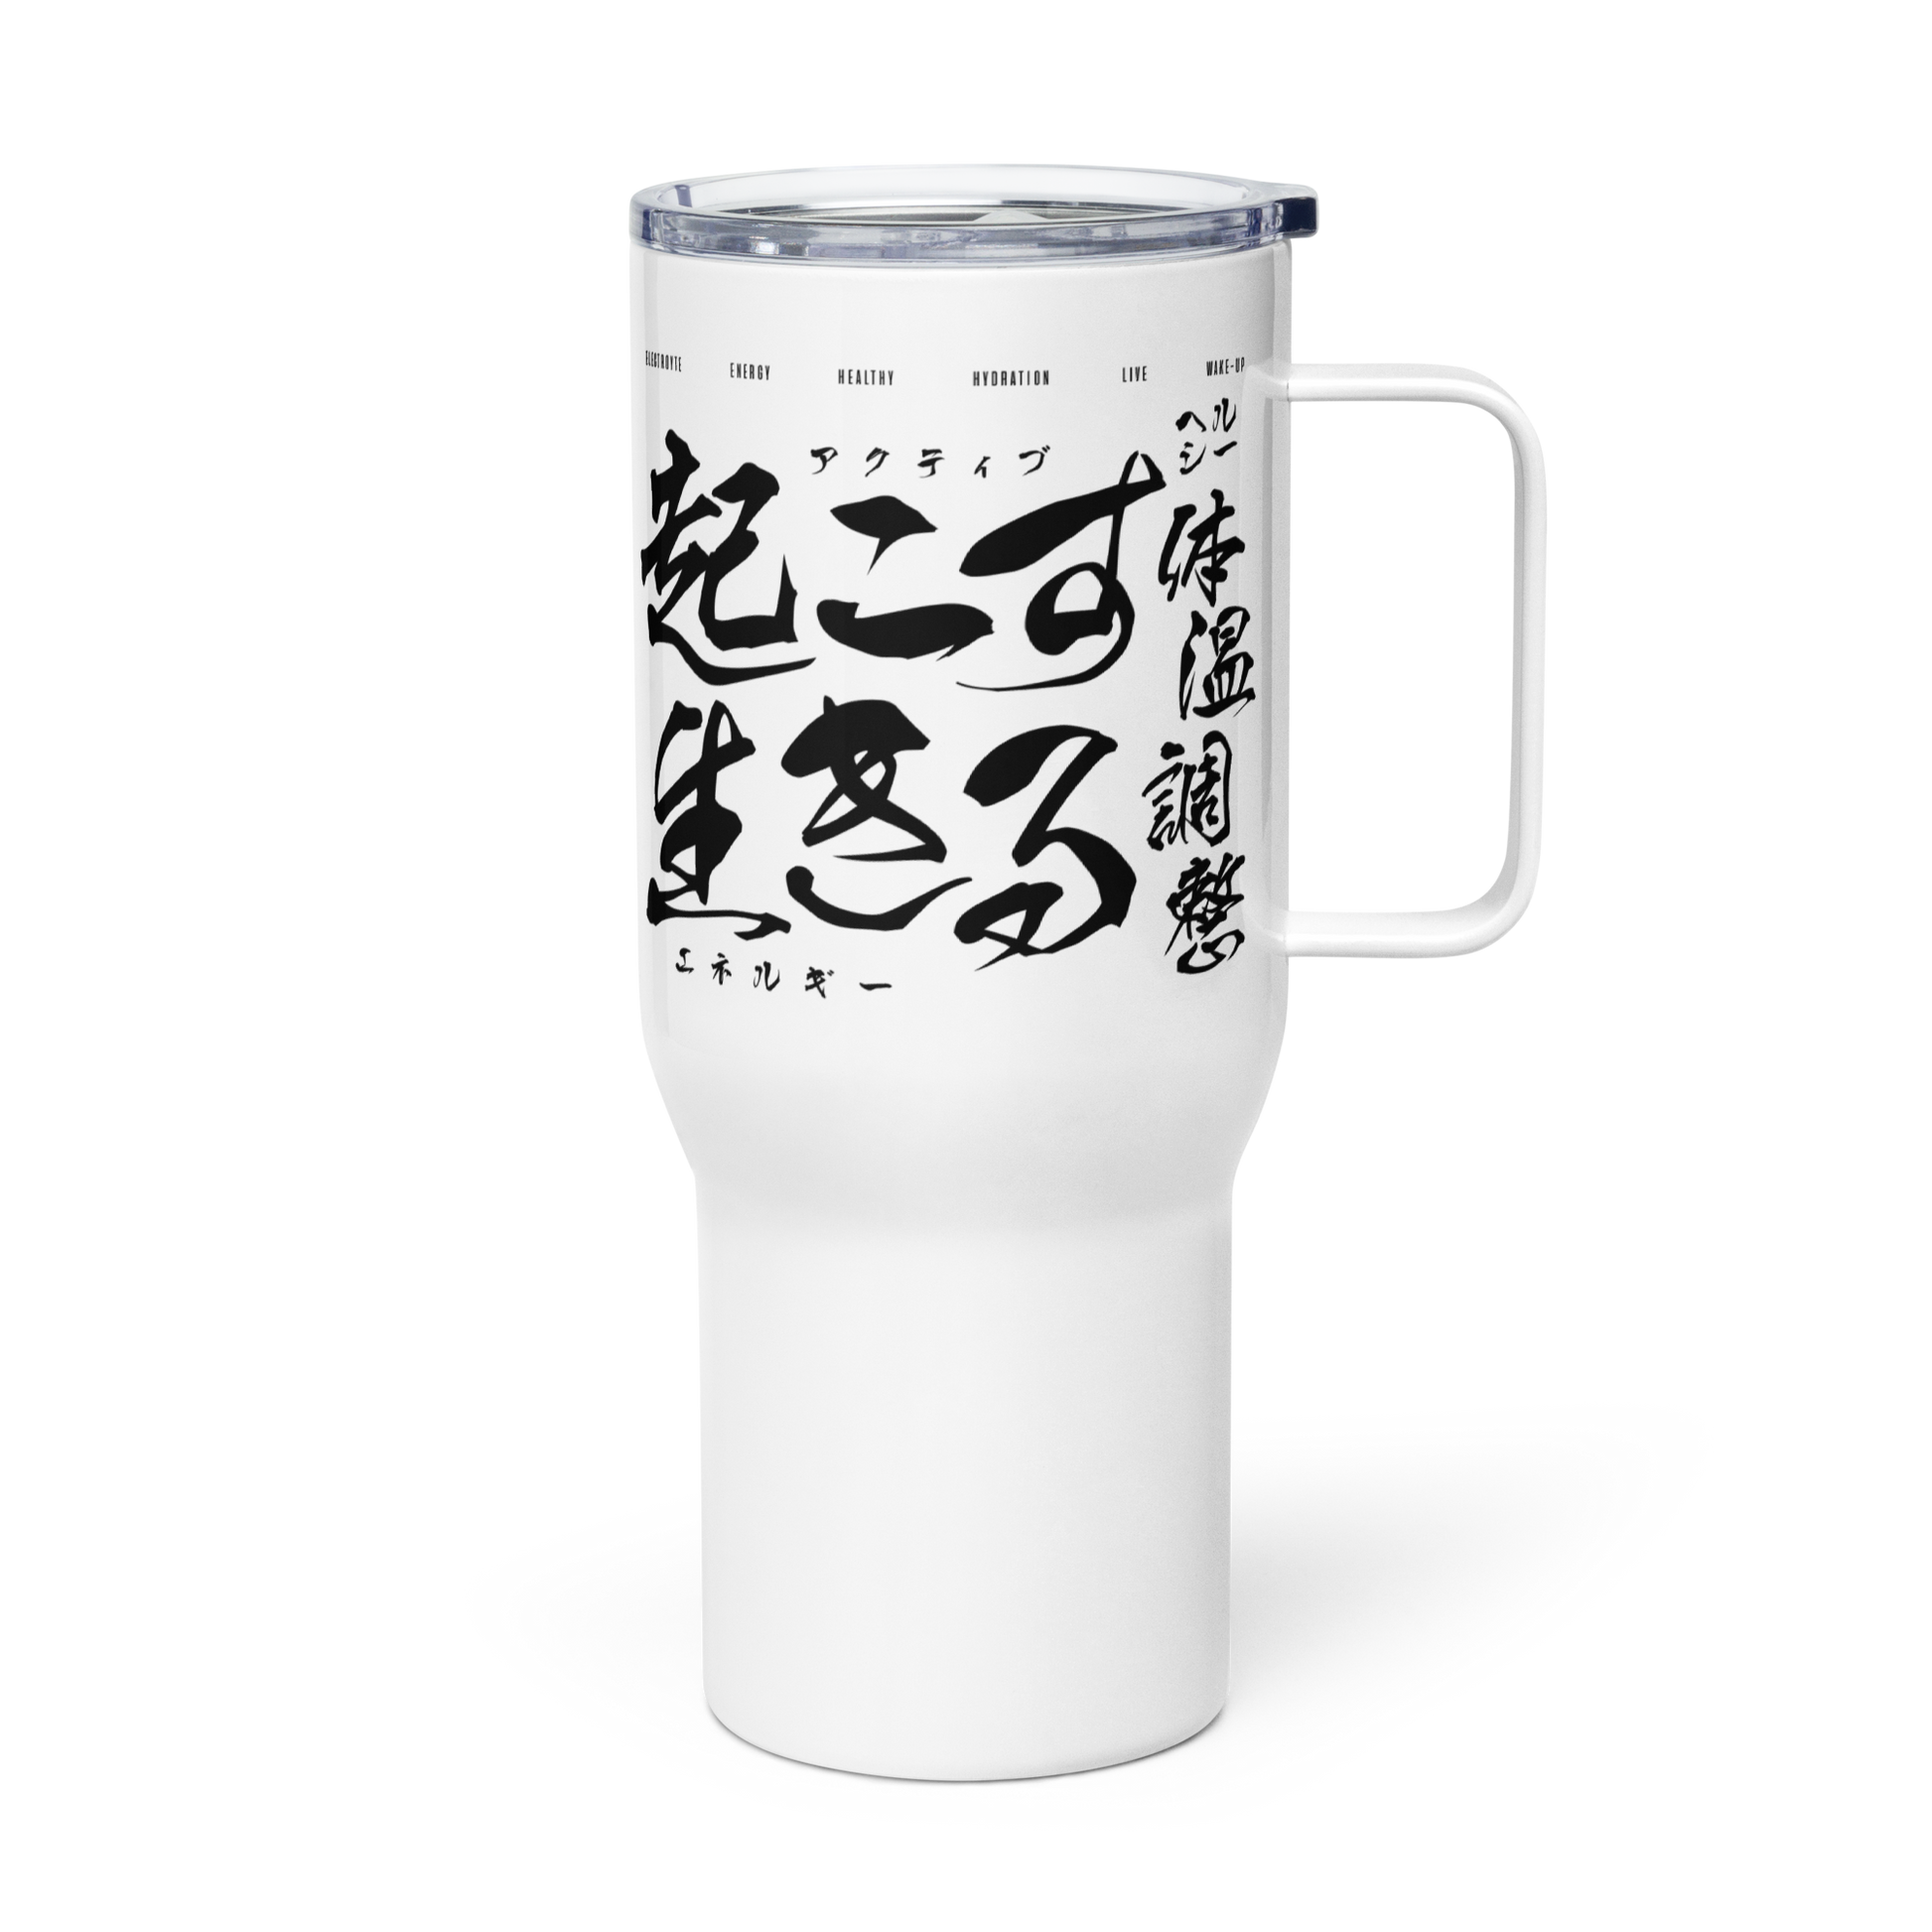 25oz white travel mug with handle on transparent background